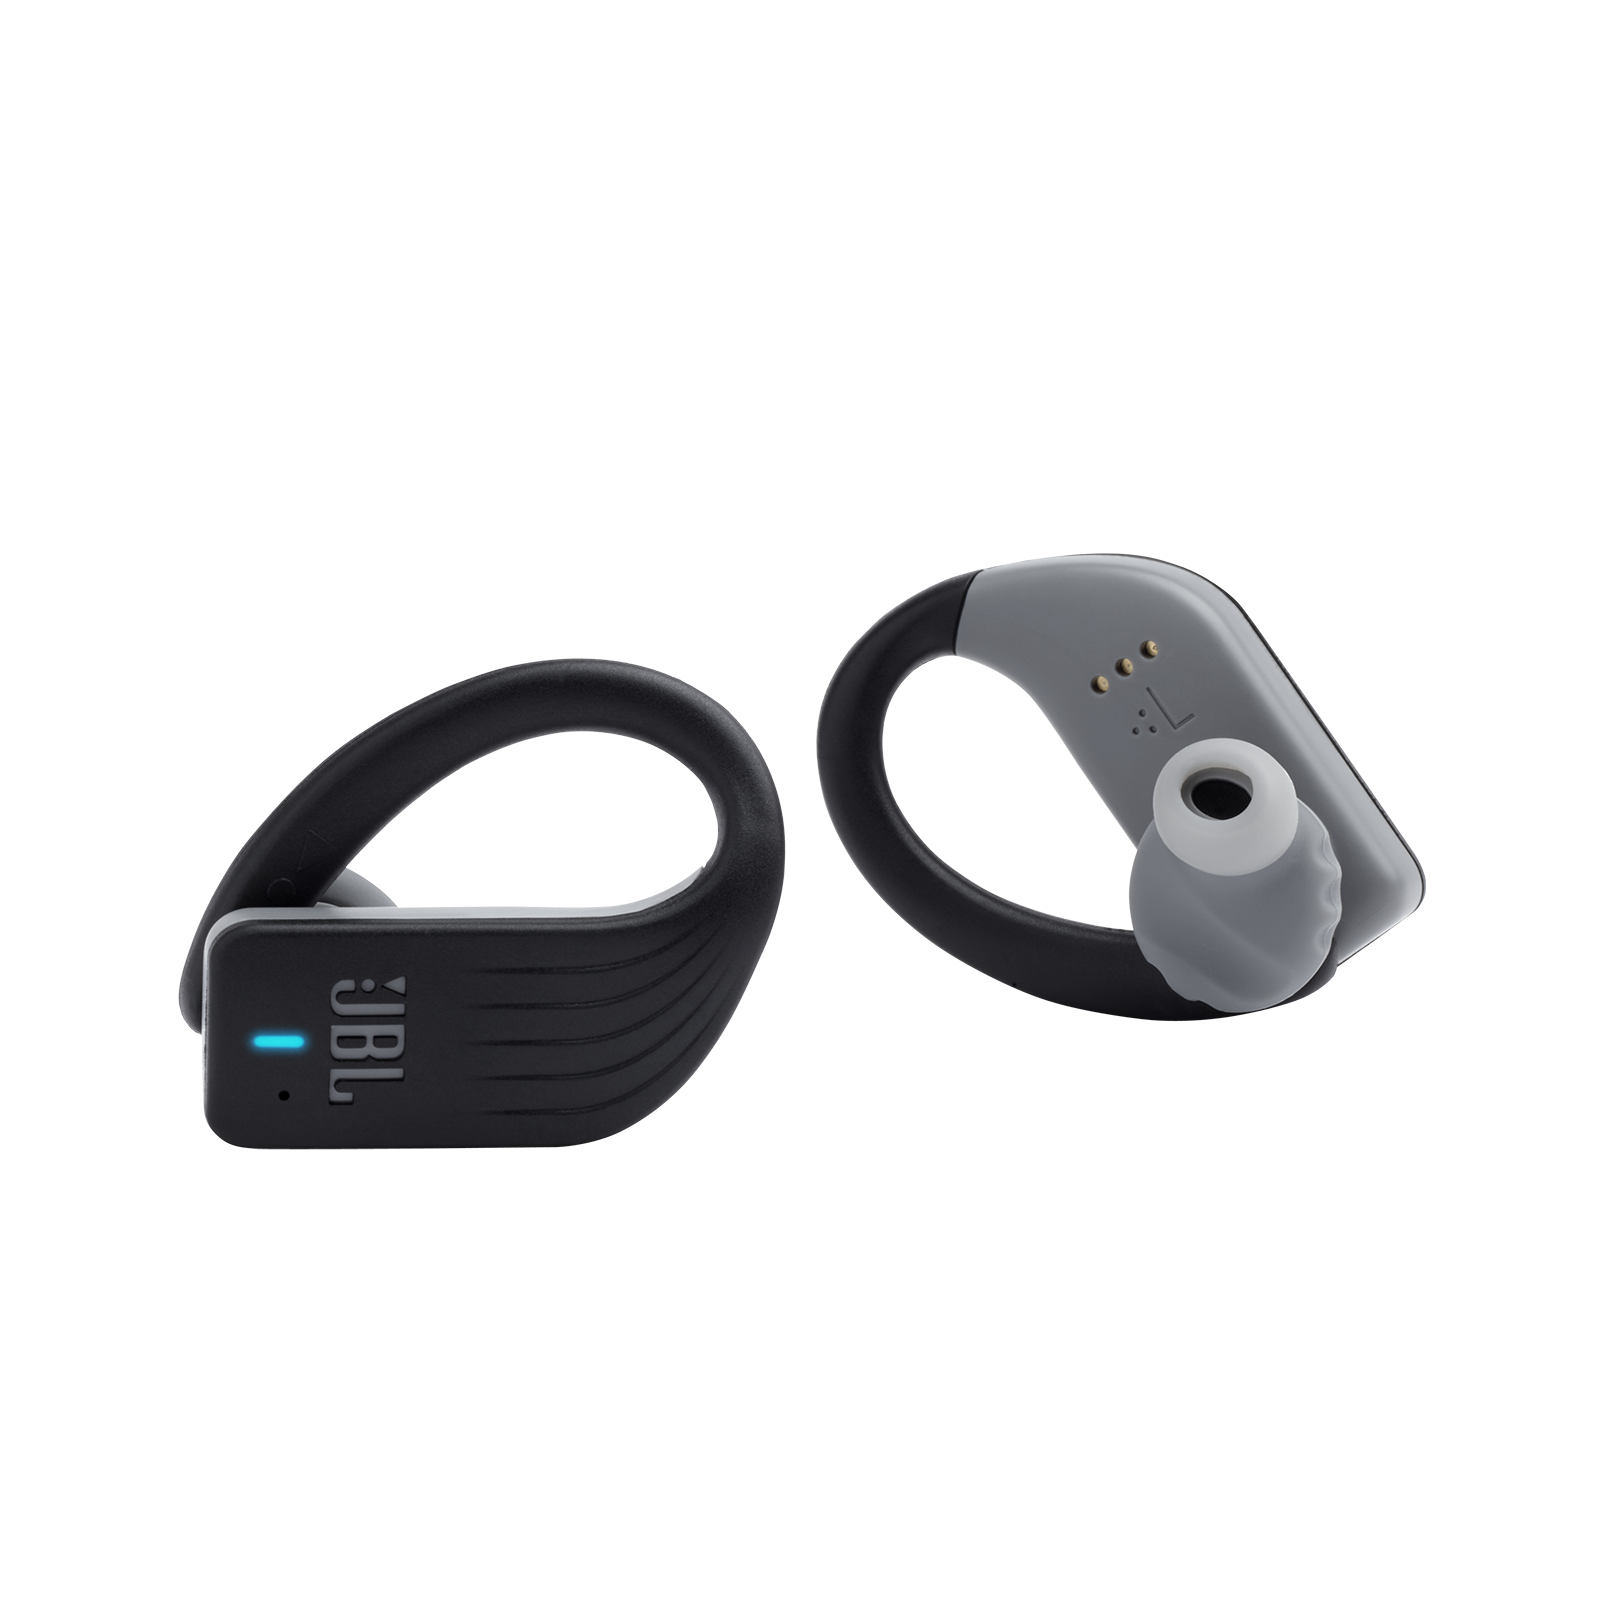 JBL Endurance PEAK - Black - Waterproof True Wireless In-Ear Sport Headphones - Detailshot 1